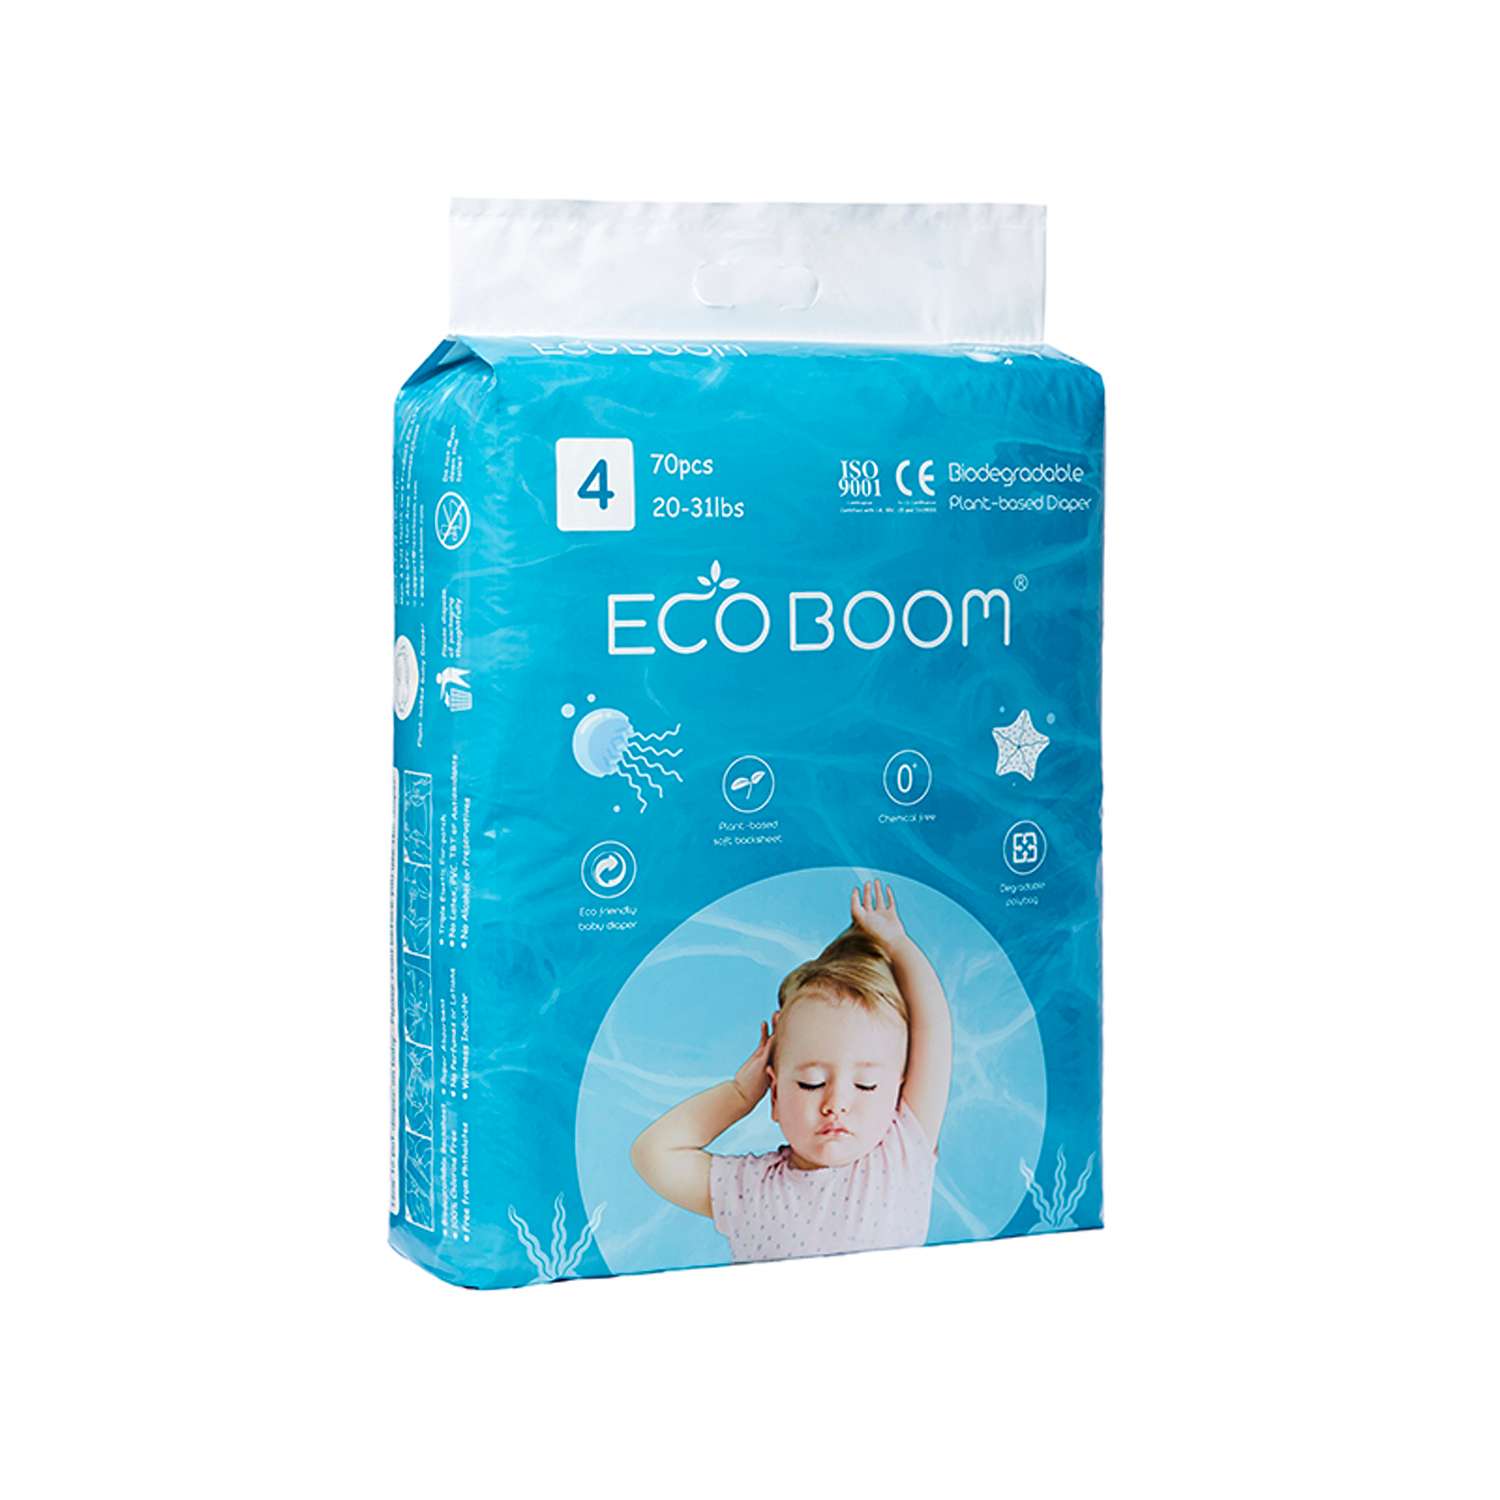 Эко подгузники детские ECO BOOM размер 4/L для детей весом 9-14 кг 70 шт - фото 2